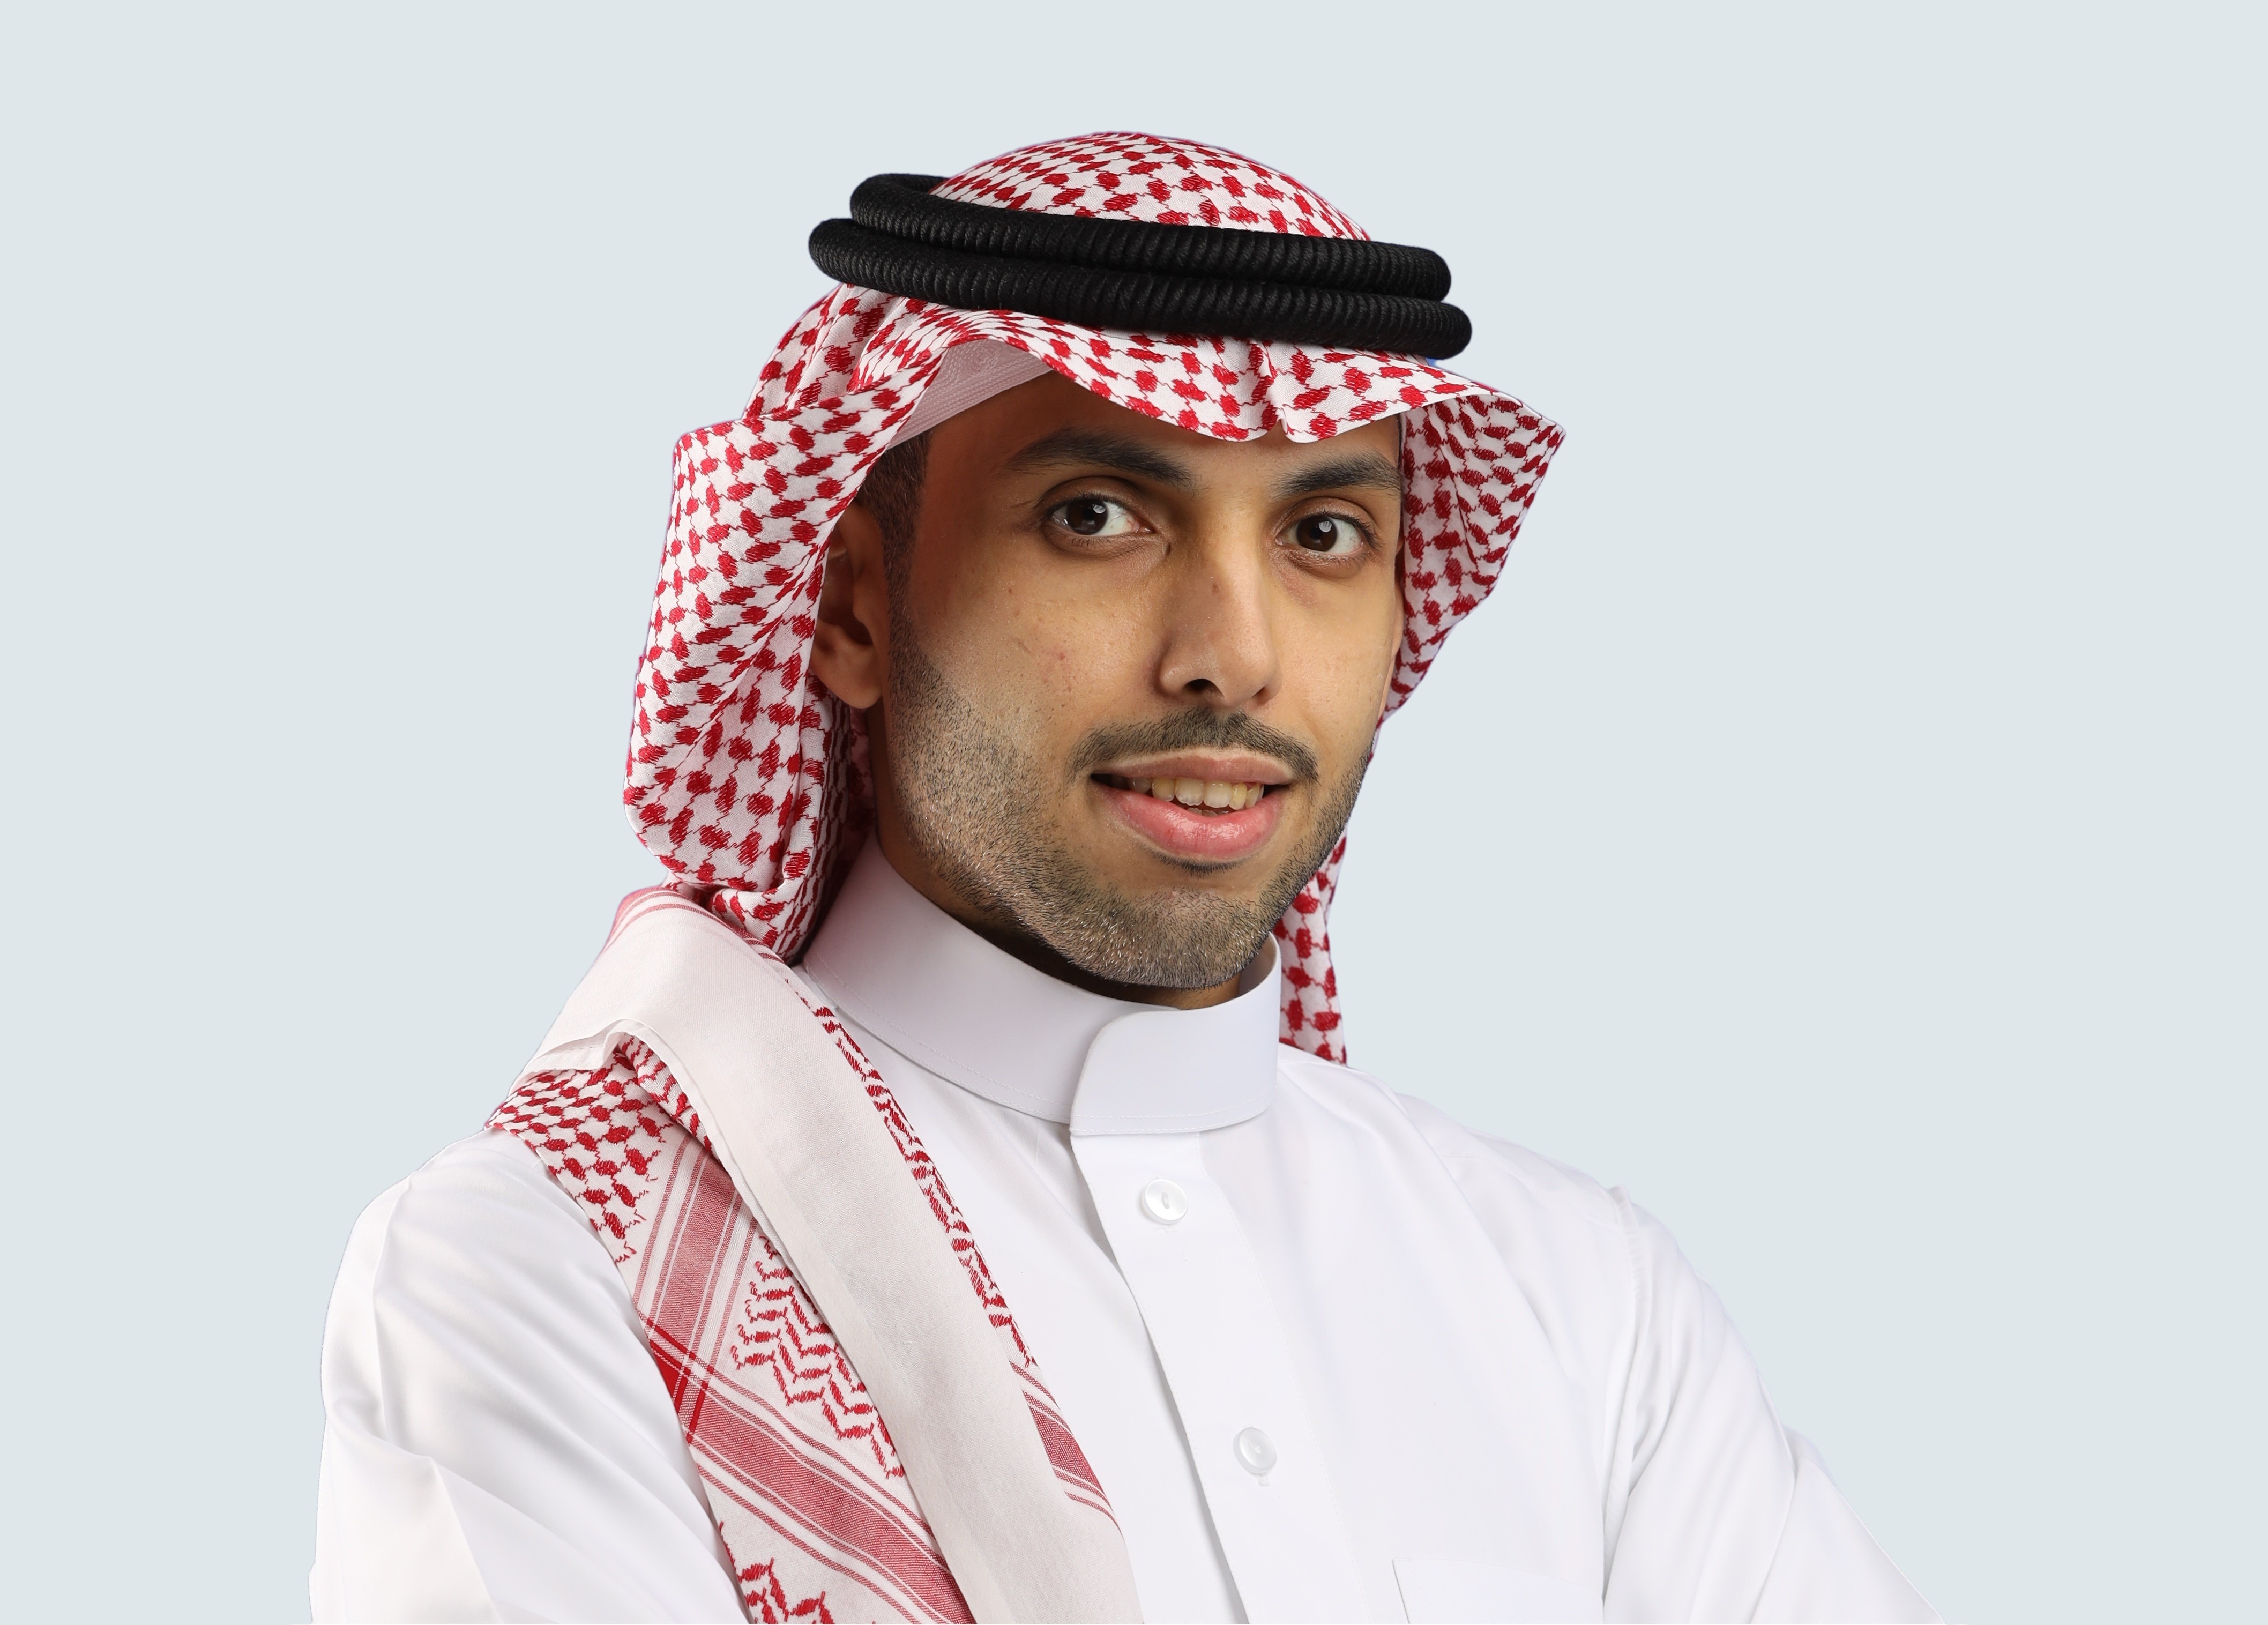 Mr. Mohamed Alkherb